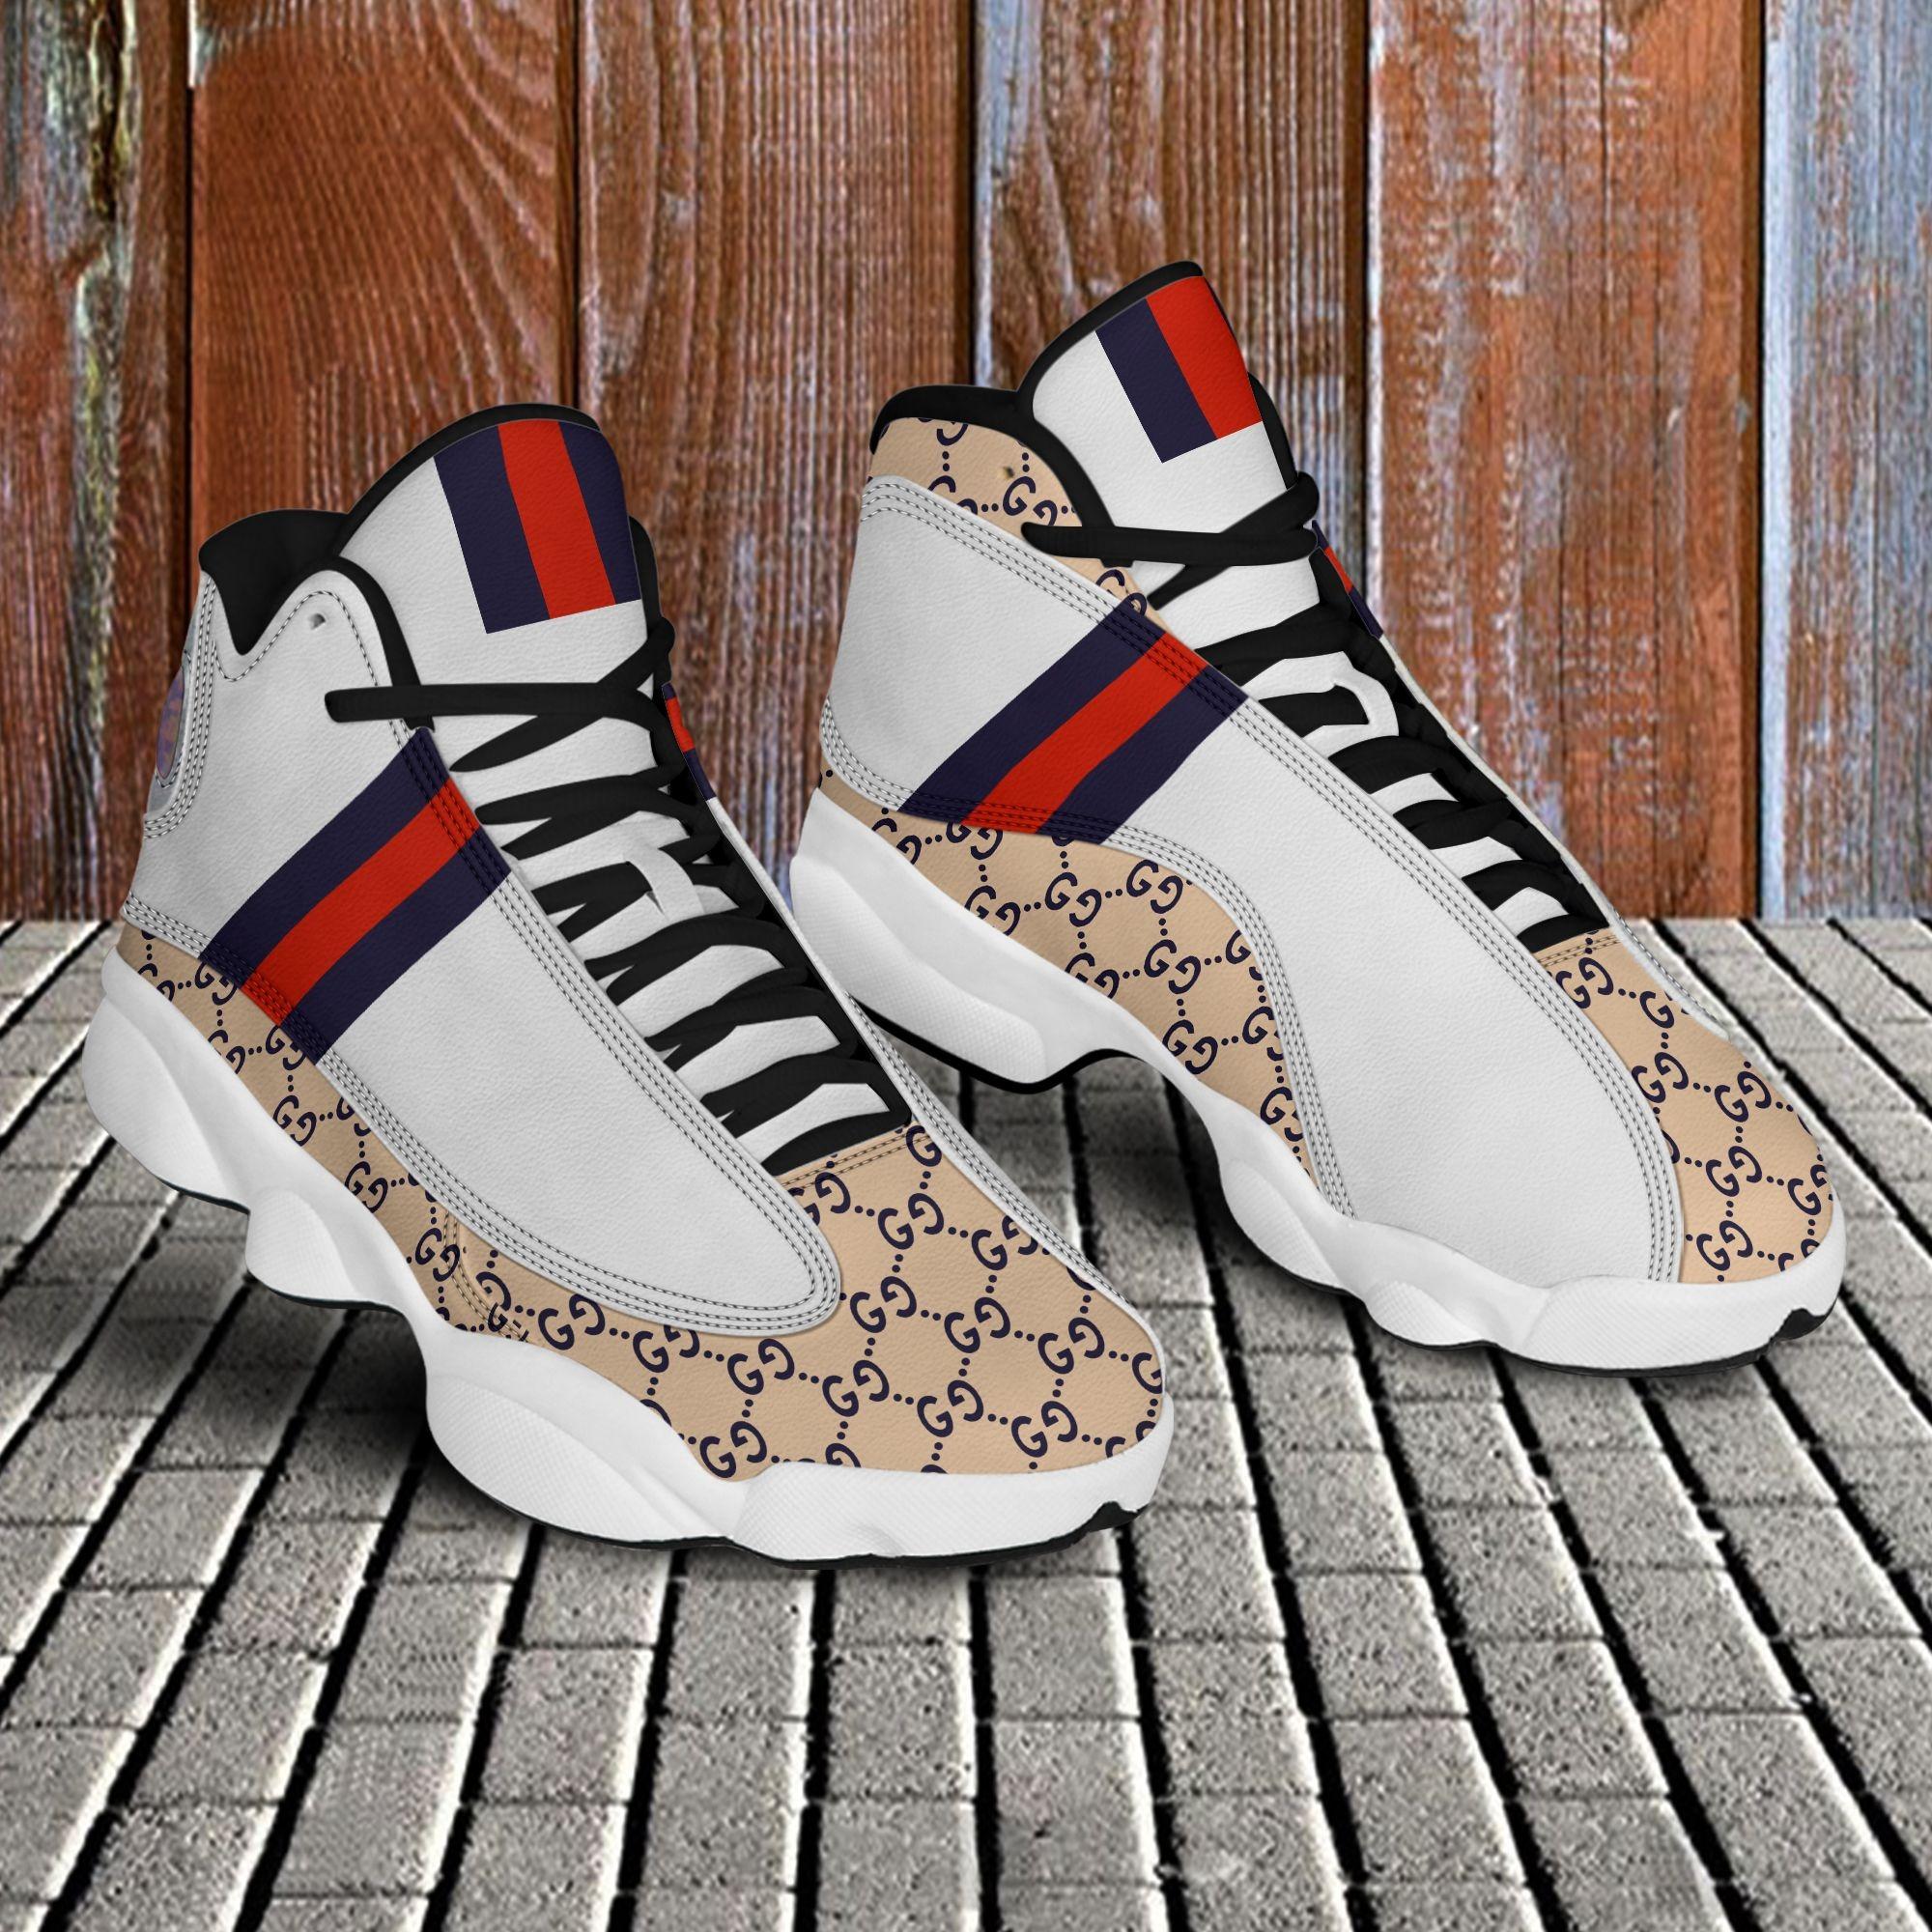 Gucci air jordan 13 couture gc sneaker hot 2022 sneaker jd14464 in